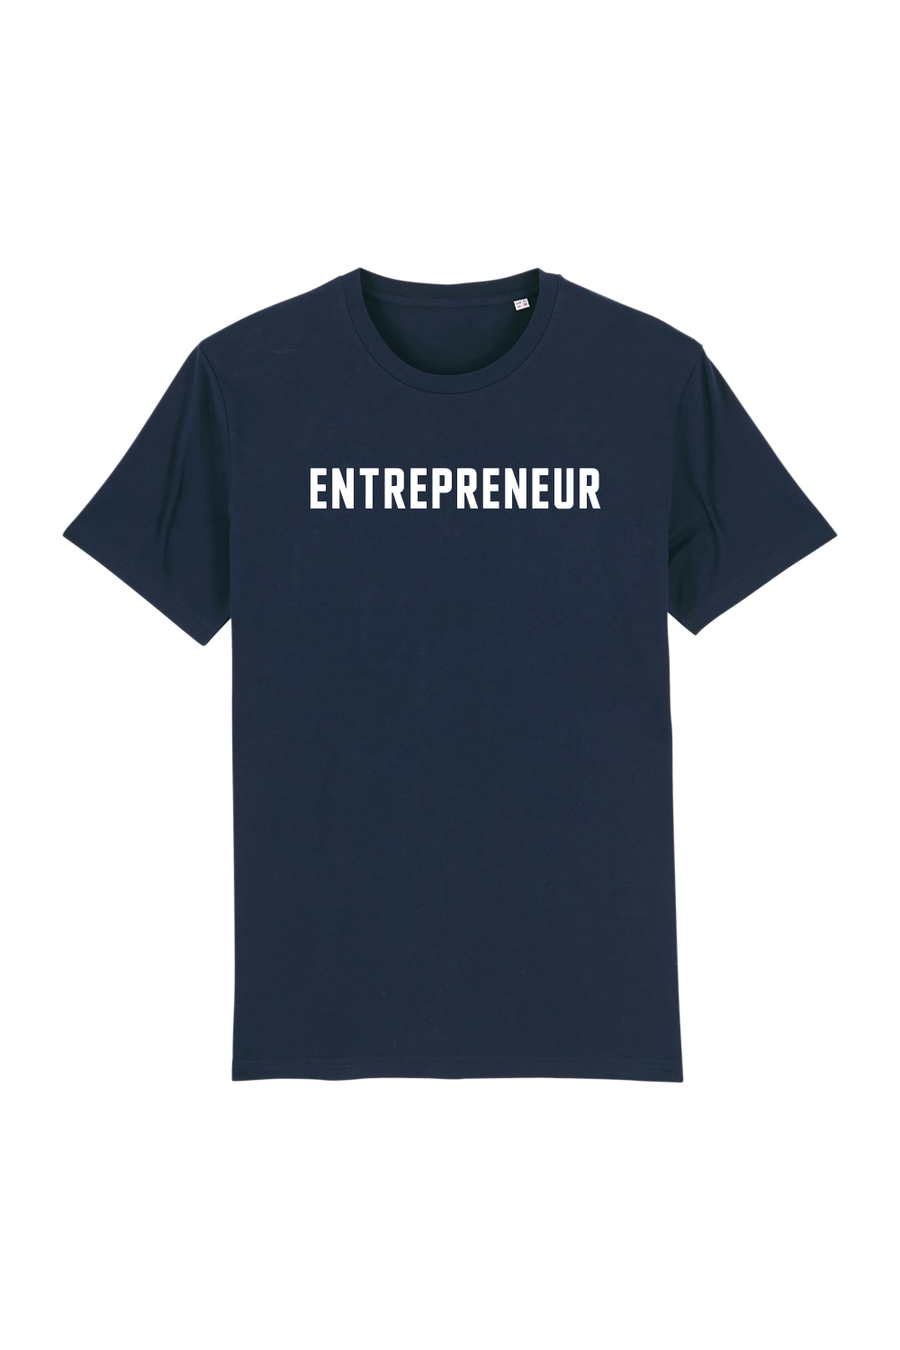 Entrepreneur kids - Joh Clothing